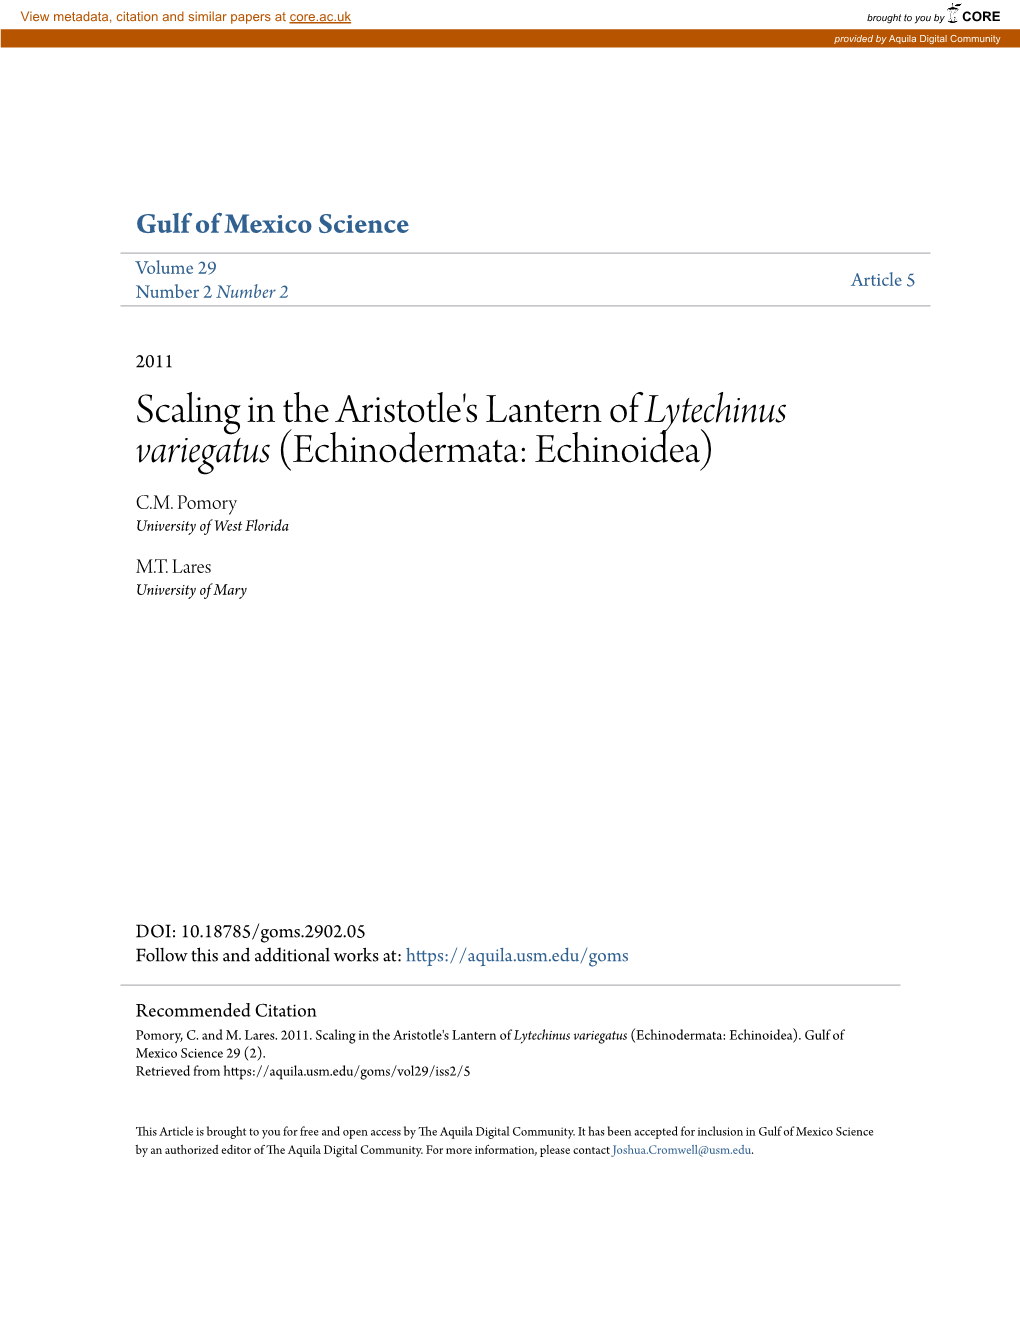 Scaling in the Aristotle's Lantern of Lytechinus Variegatus (Echinodermata: Echinoidea) C.M